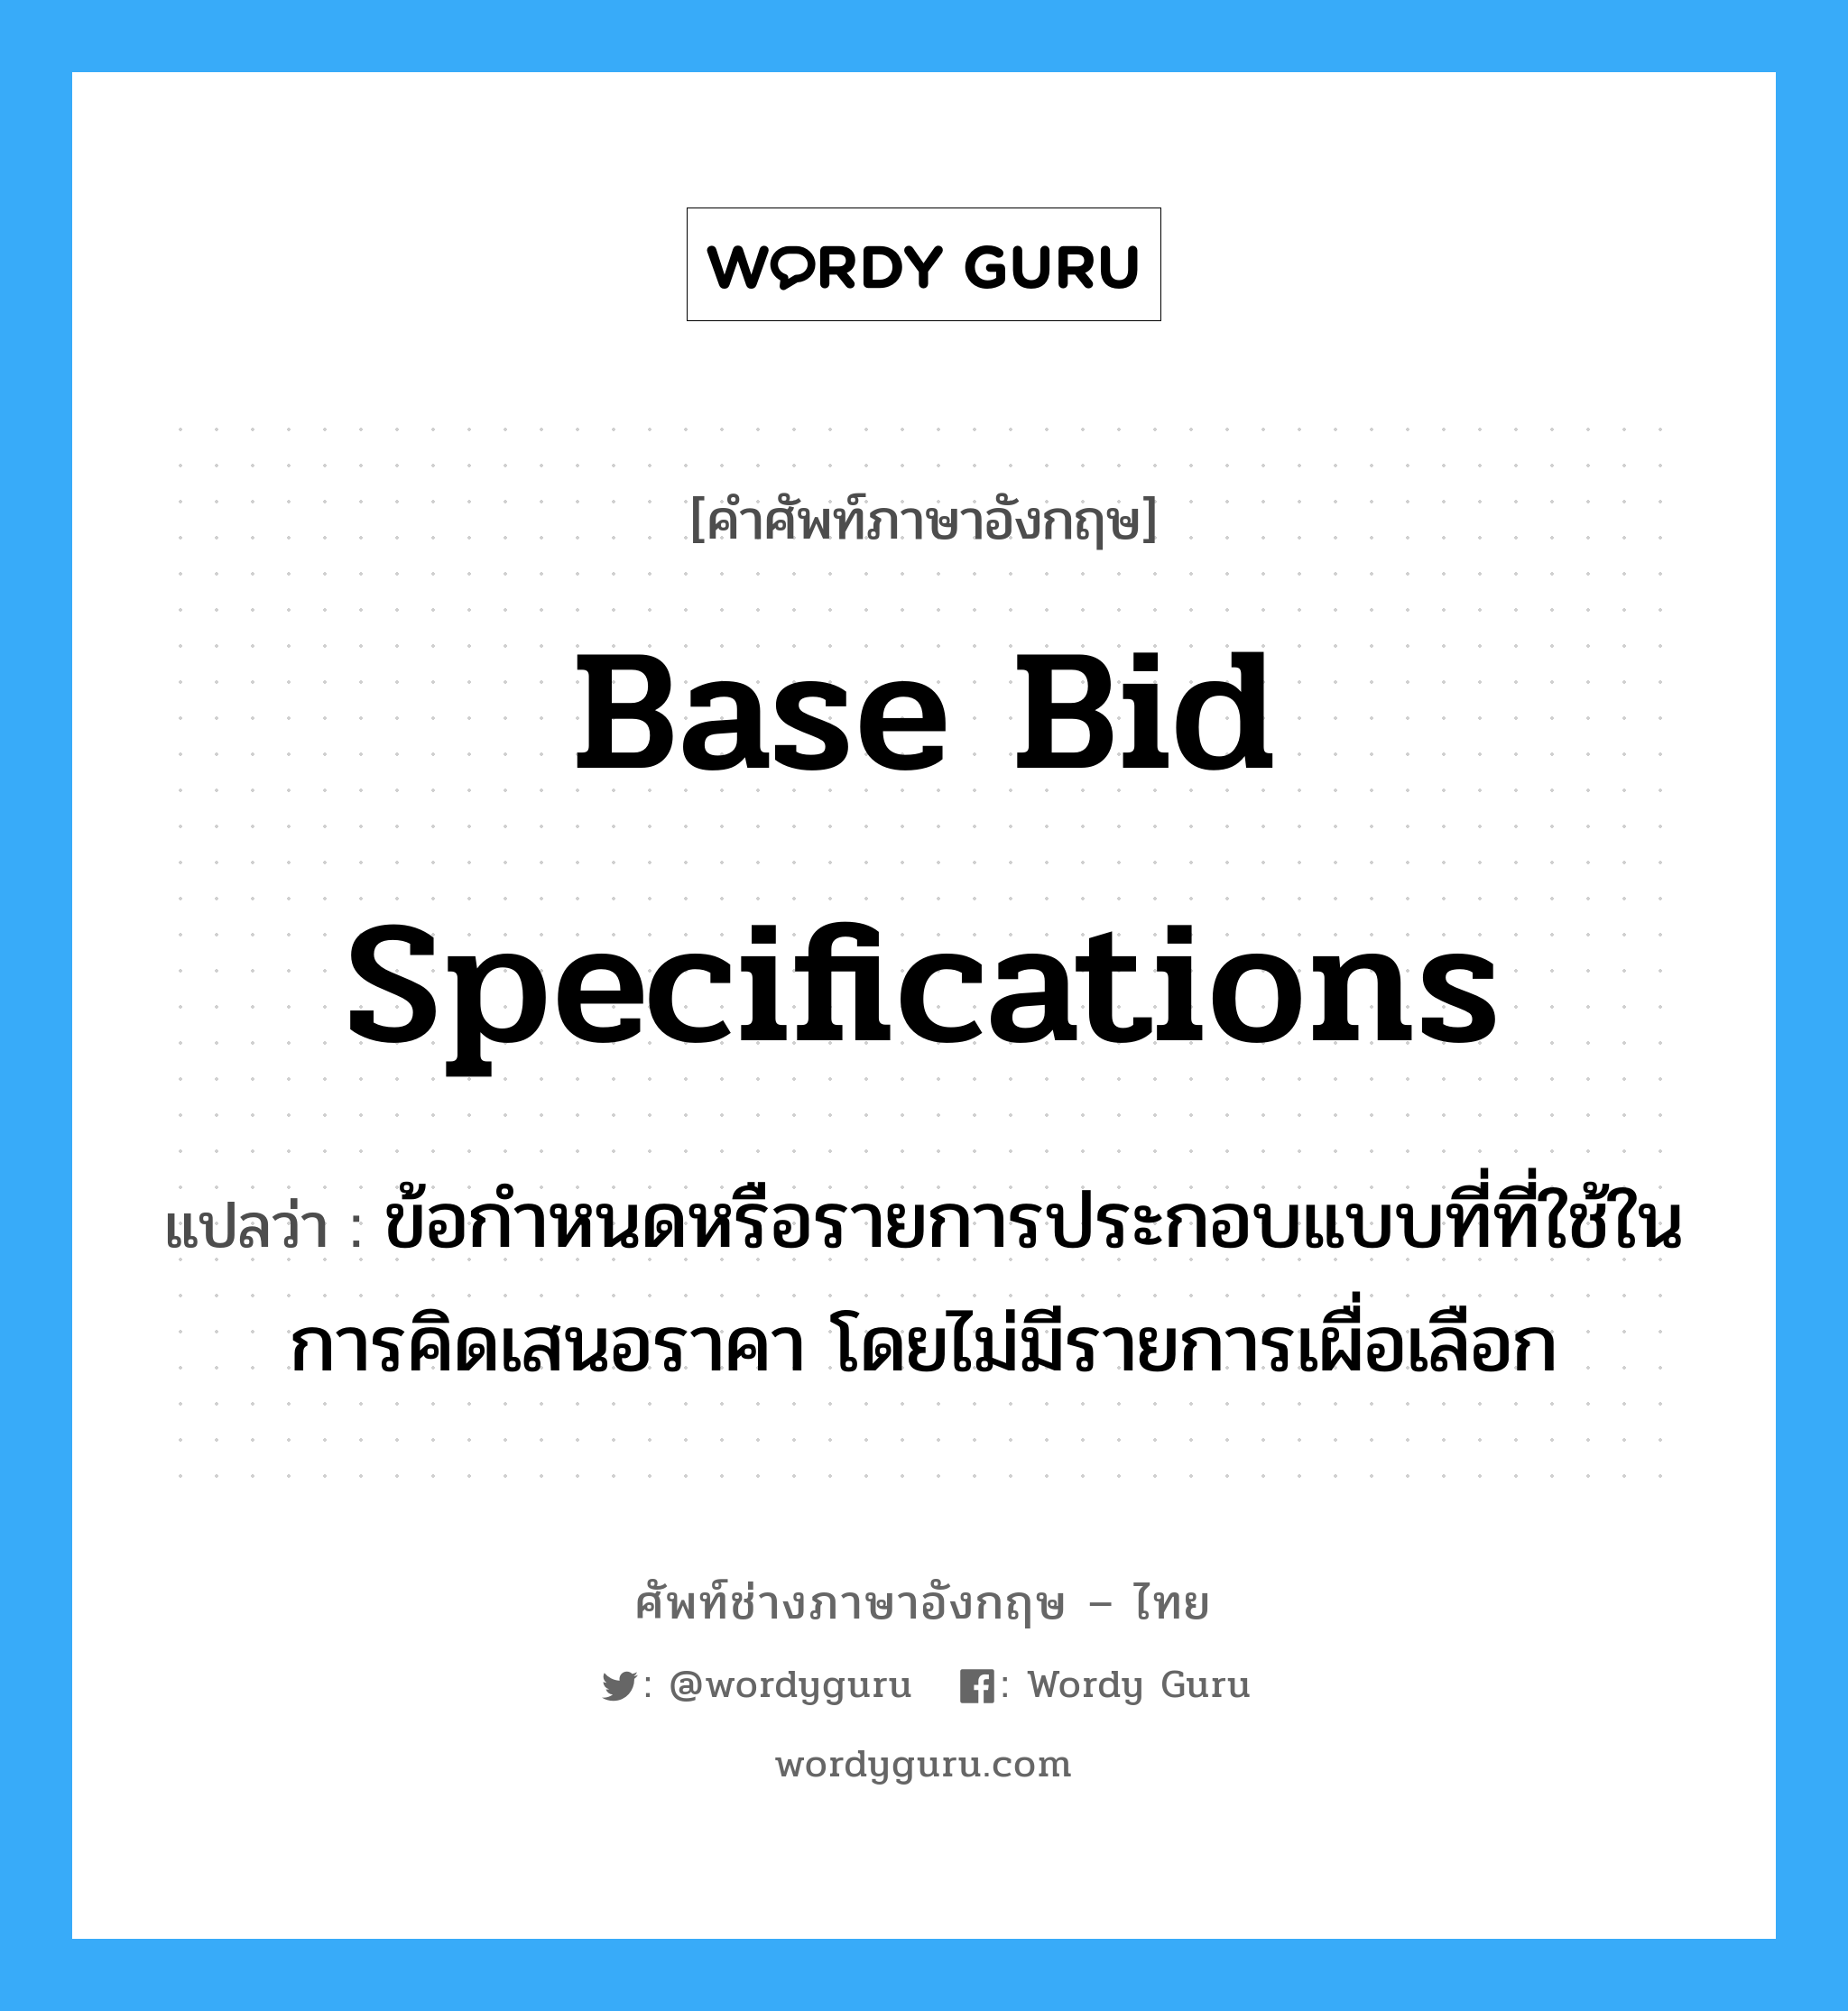 Base Bid Specifications แปลว่า?, คำศัพท์ช่างภาษาอังกฤษ - ไทย Base Bid Specifications คำศัพท์ภาษาอังกฤษ Base Bid Specifications แปลว่า ข้อกำหนดหรือรายการประกอบแบบที่ที่ใช้ในการคิดเสนอราคา โดยไม่มีรายการเผื่อเลือก